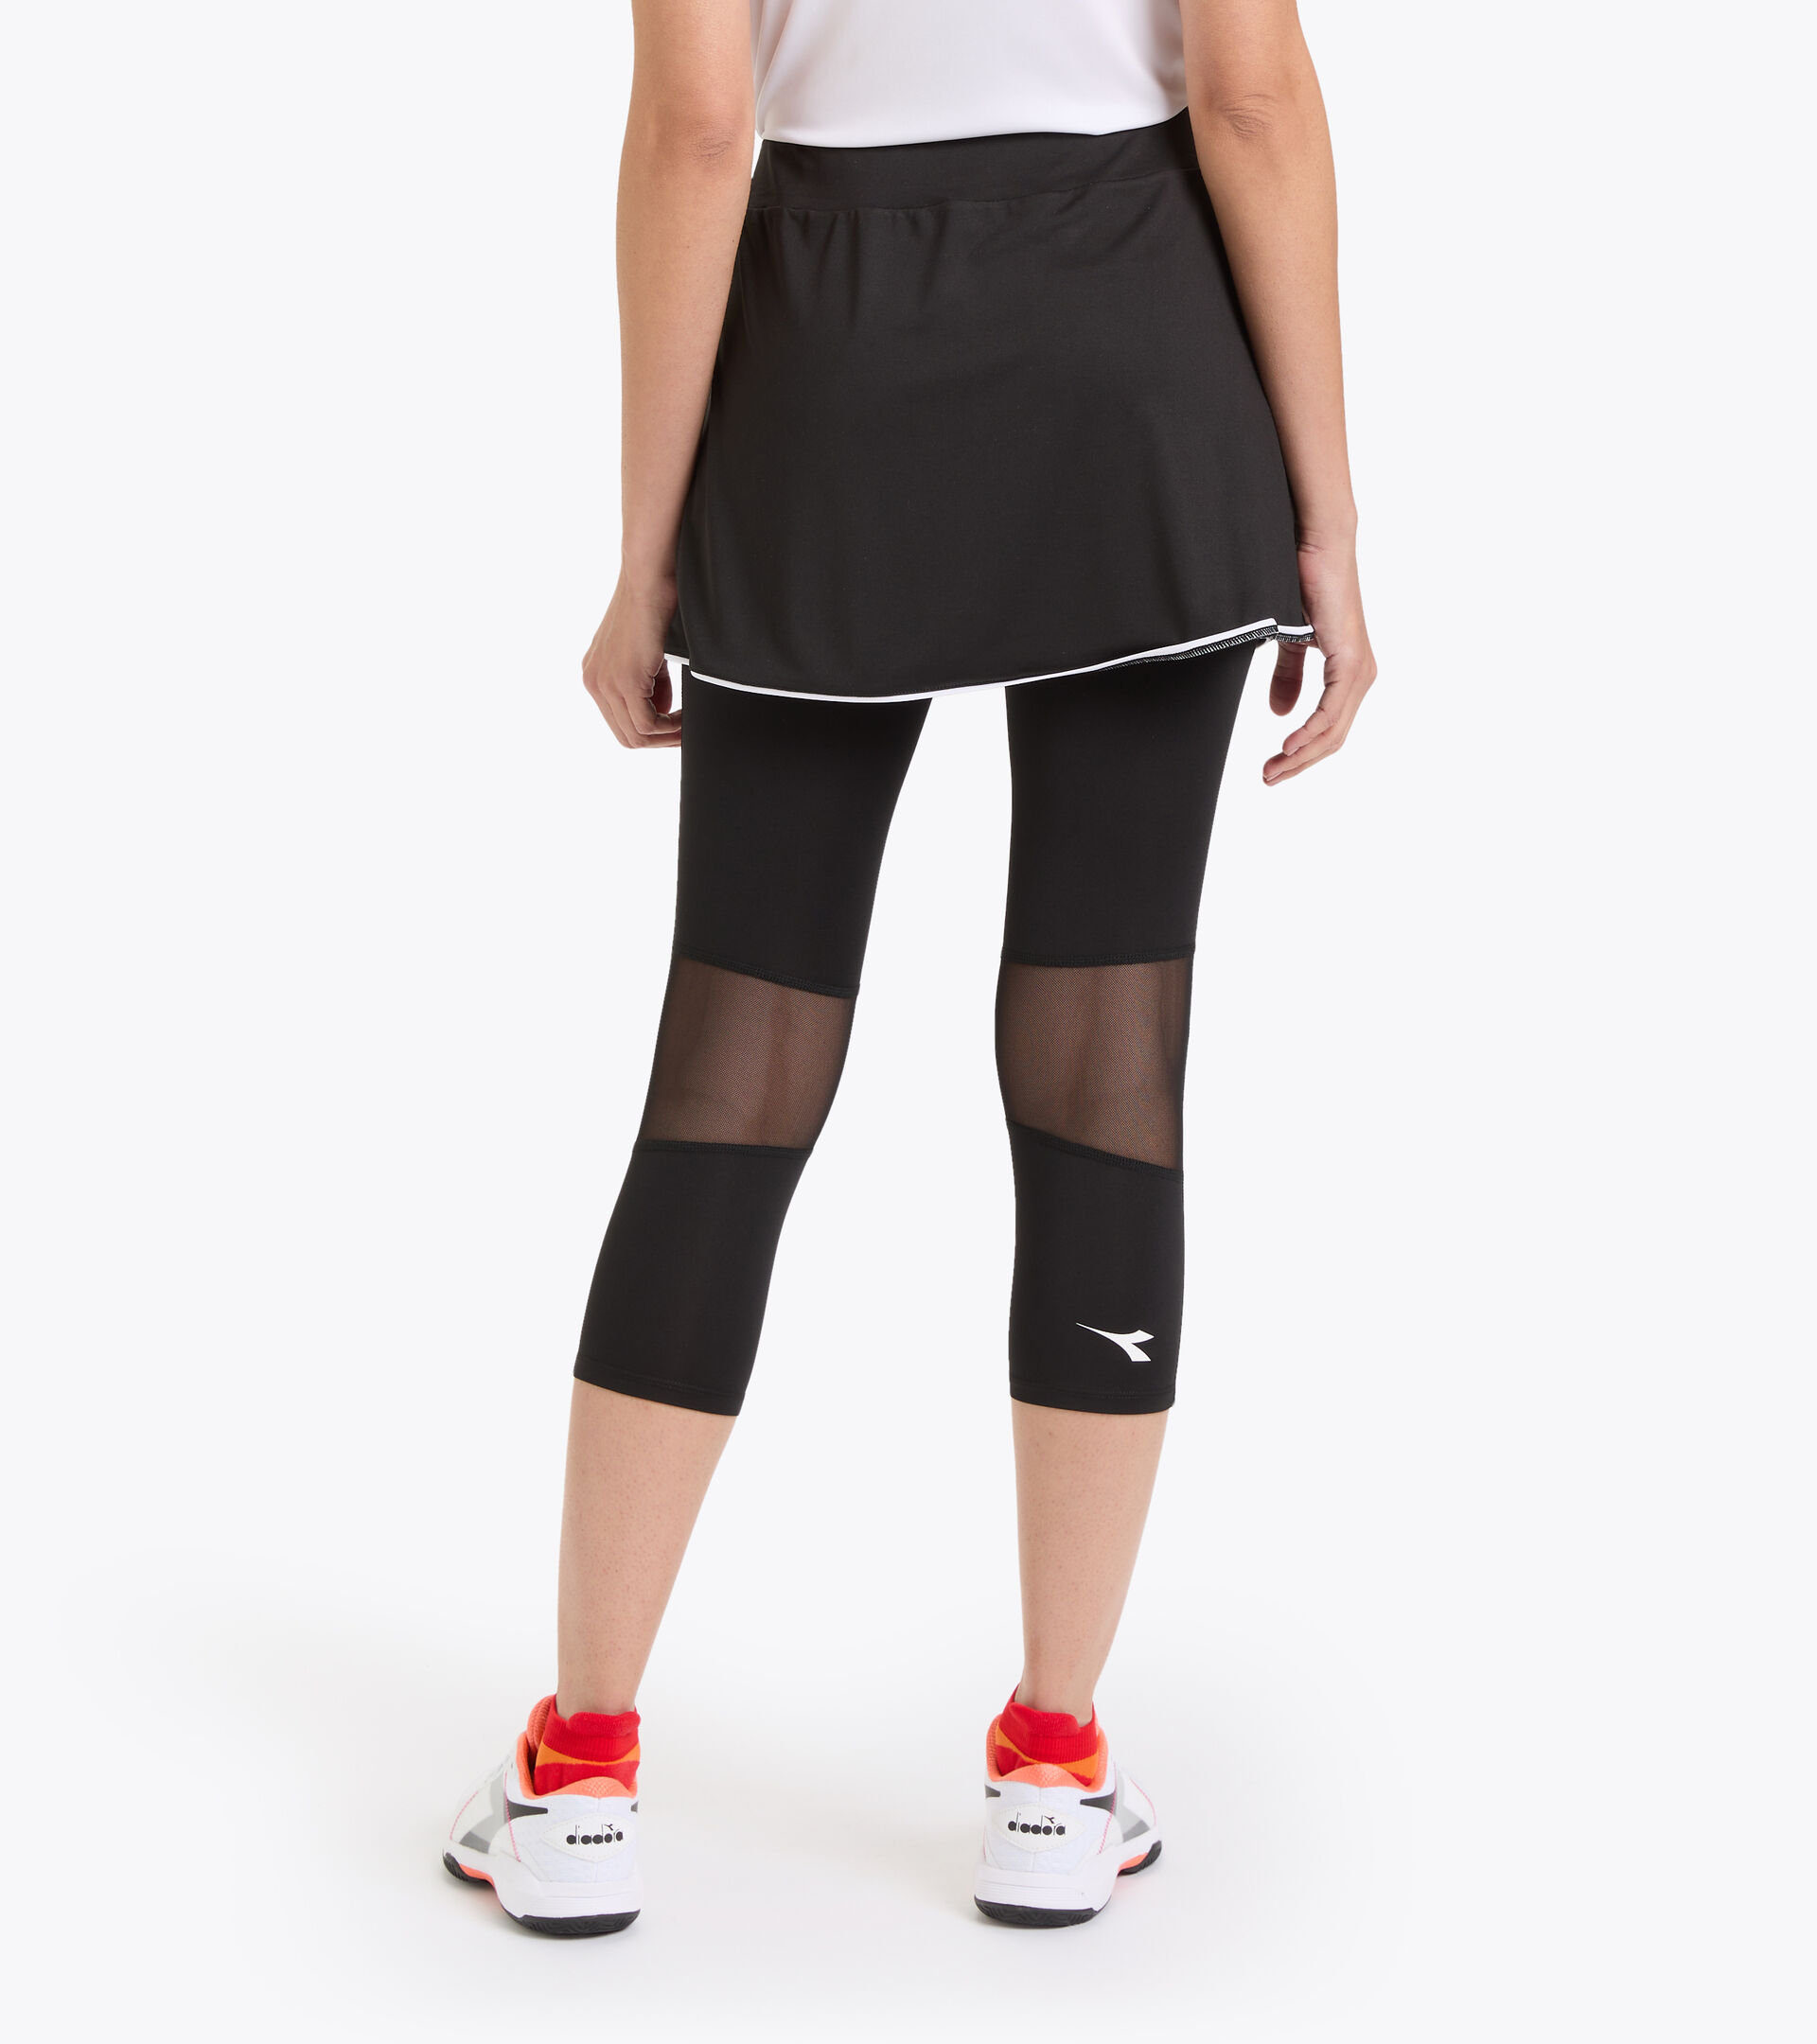 L. POWER - tennis Women - Diadora Store skirt Online US Polyester SKIRT